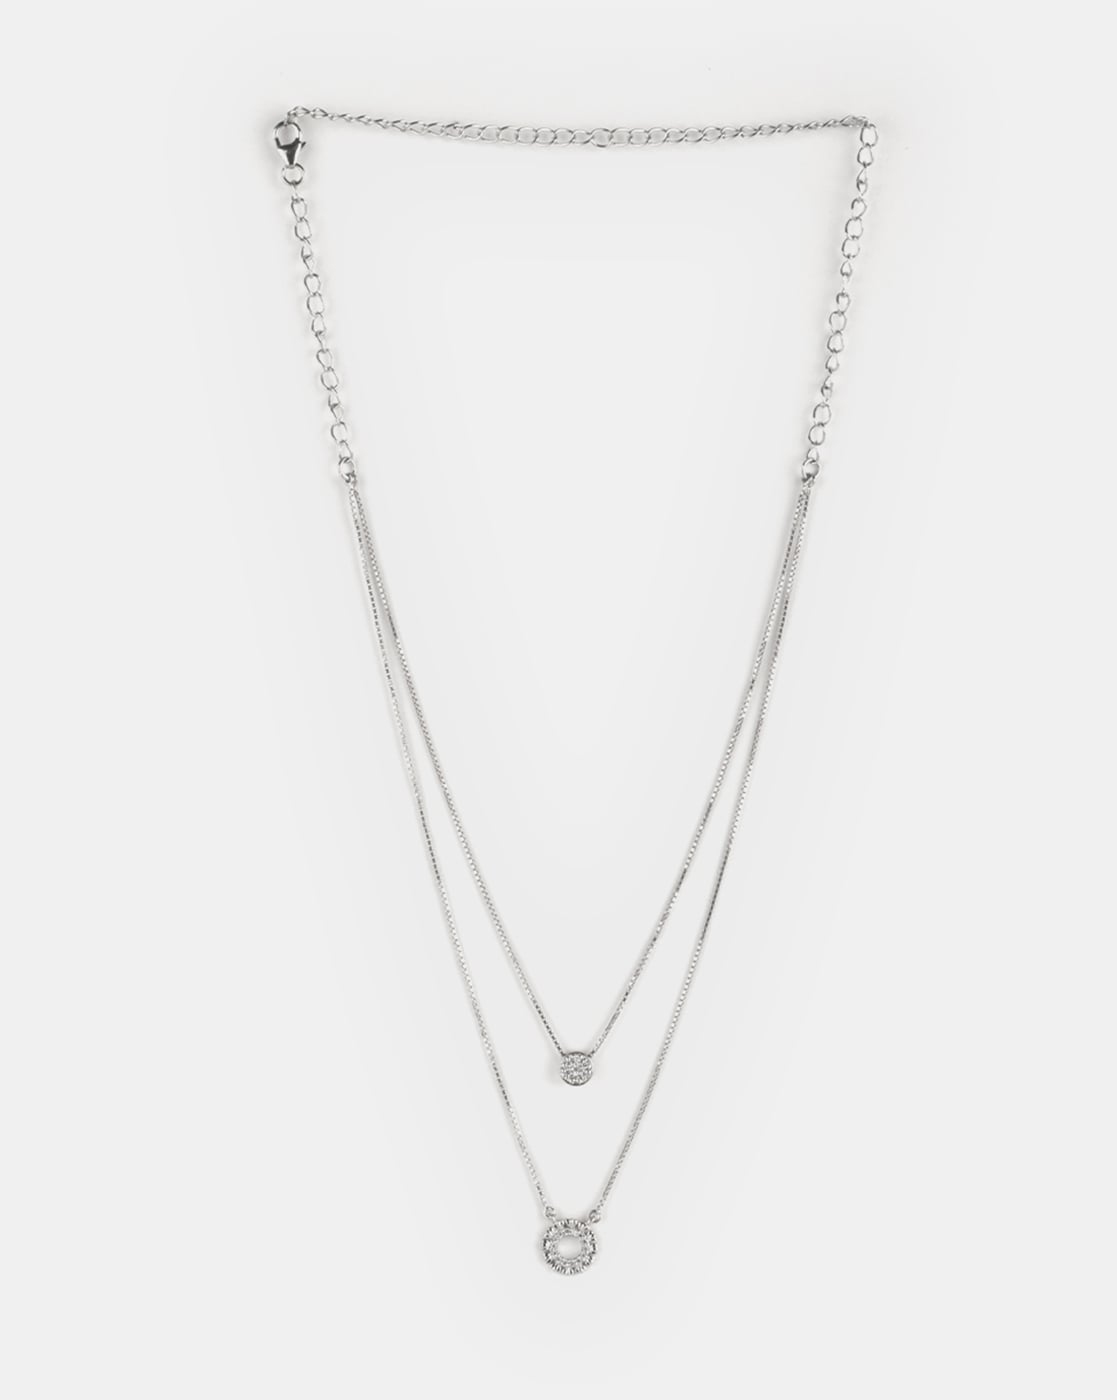 Buy Double Fish Oxidized Beads Chain Necklace | Tarinika - Tarinika India